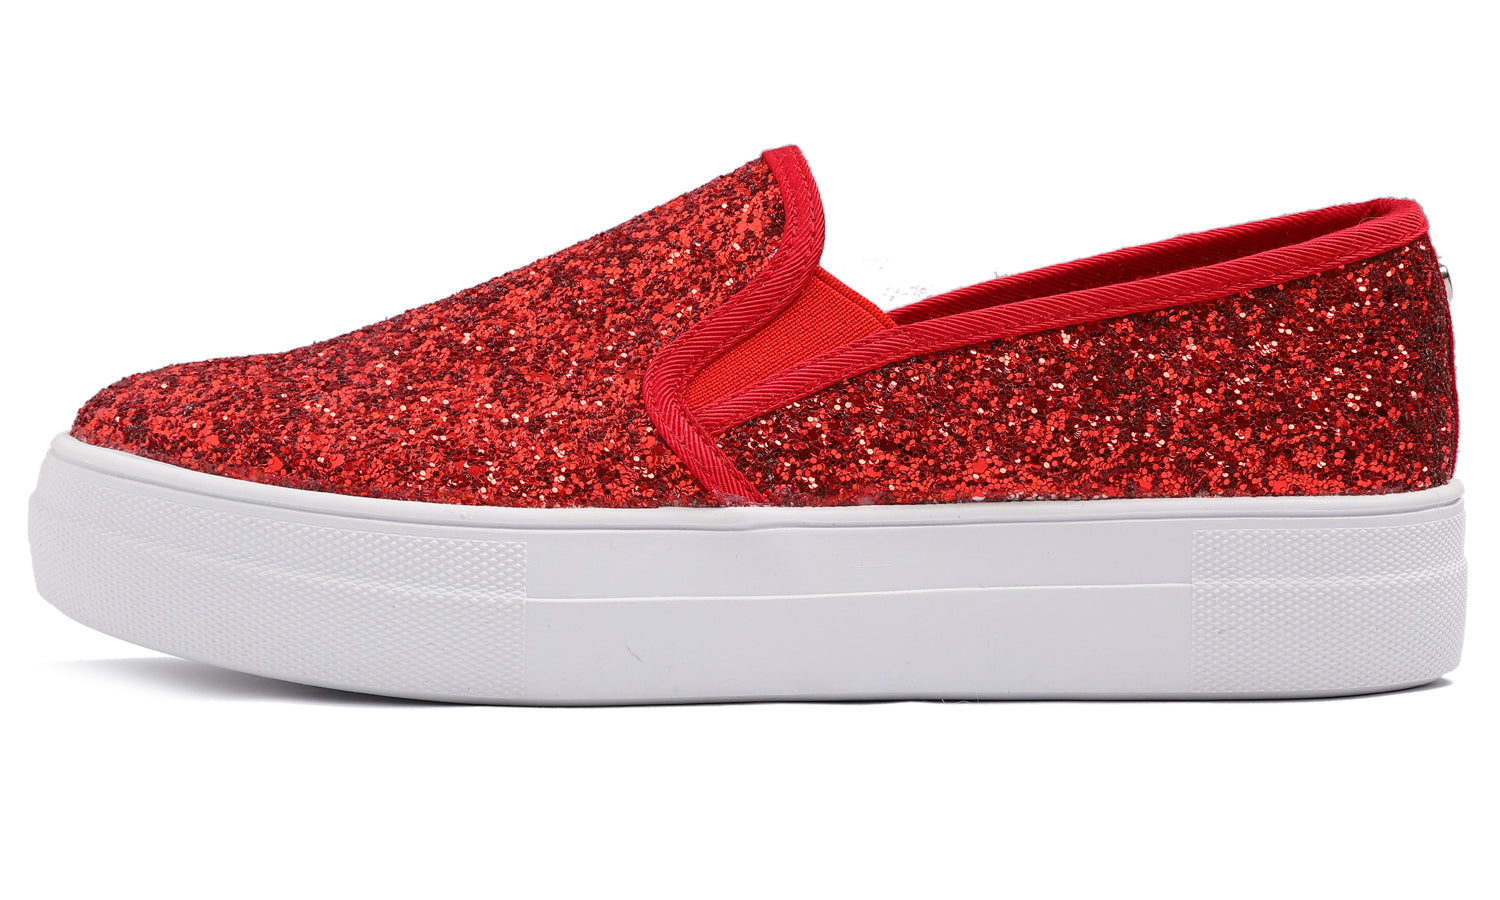 Feversole Women's Glitter Red Platform Slip On Sneaker Casual Flat Loafers